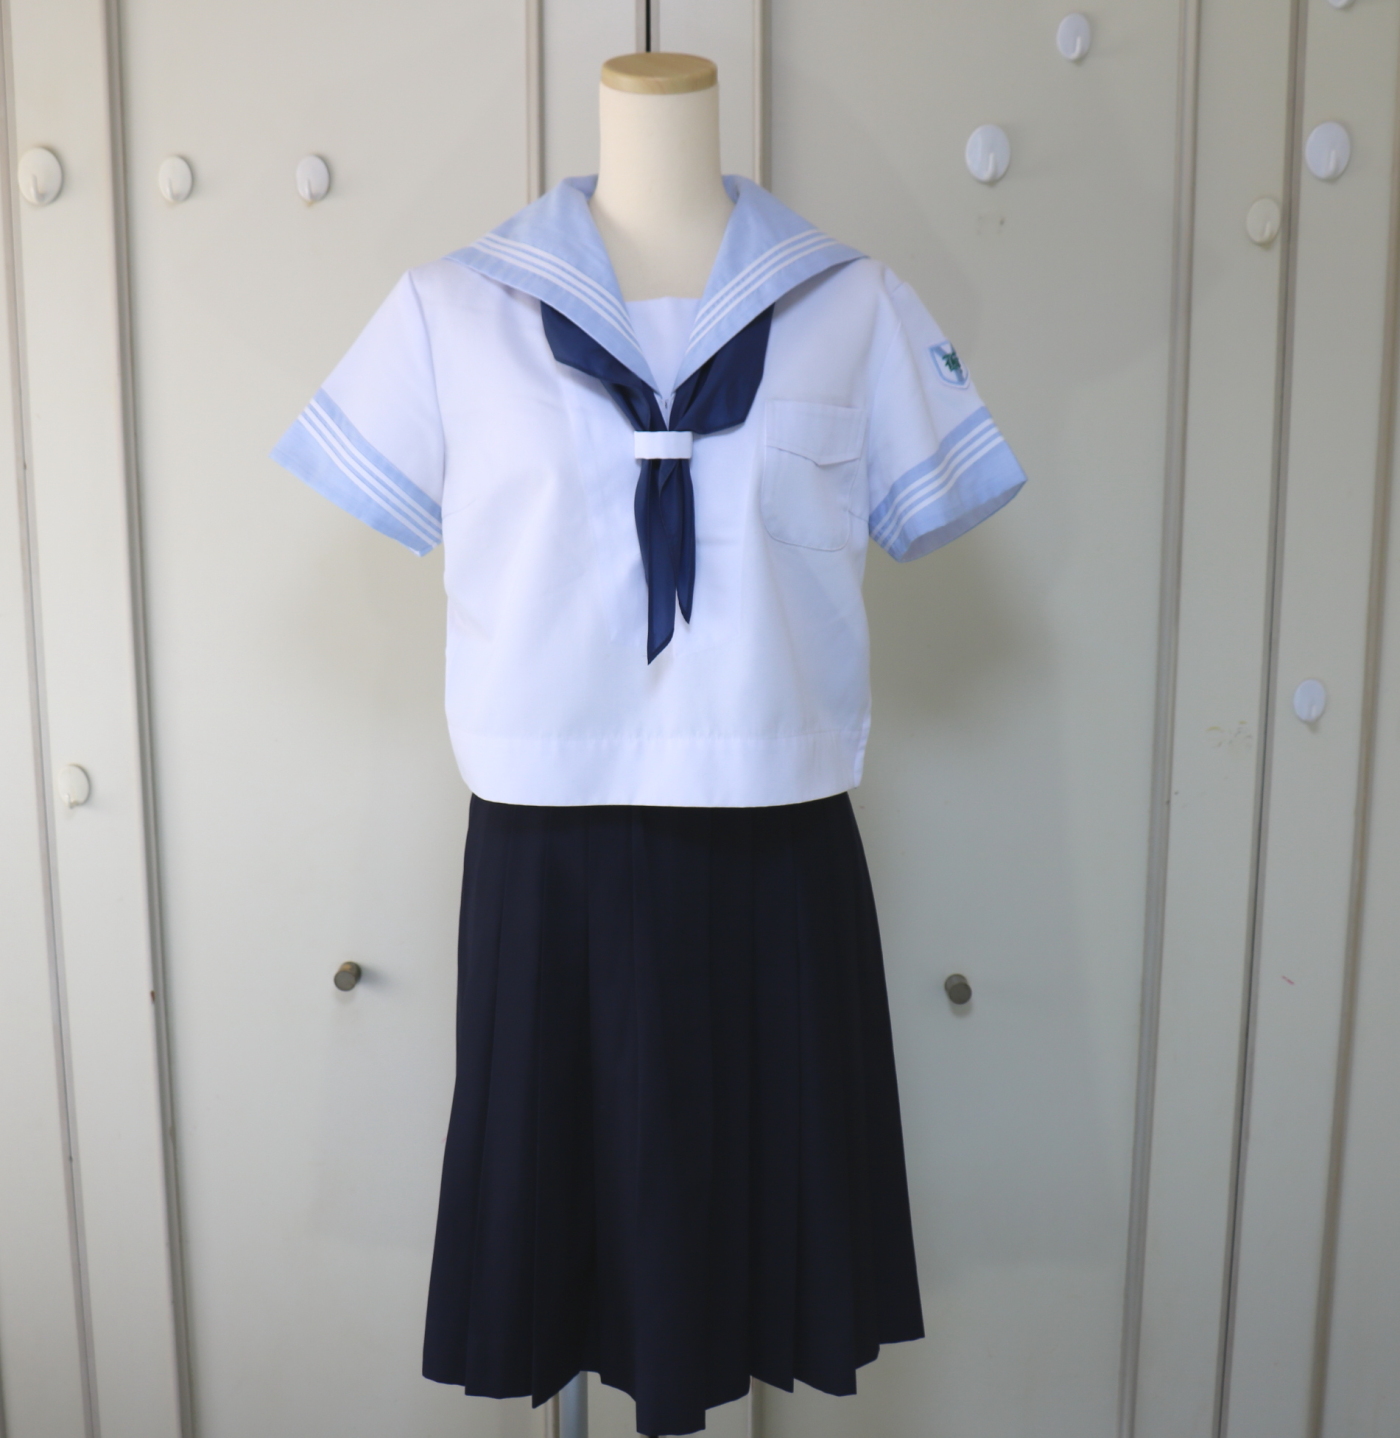 神奈川県横浜市 横浜隼人高等学校の女子夏用セーラー服を買取しました